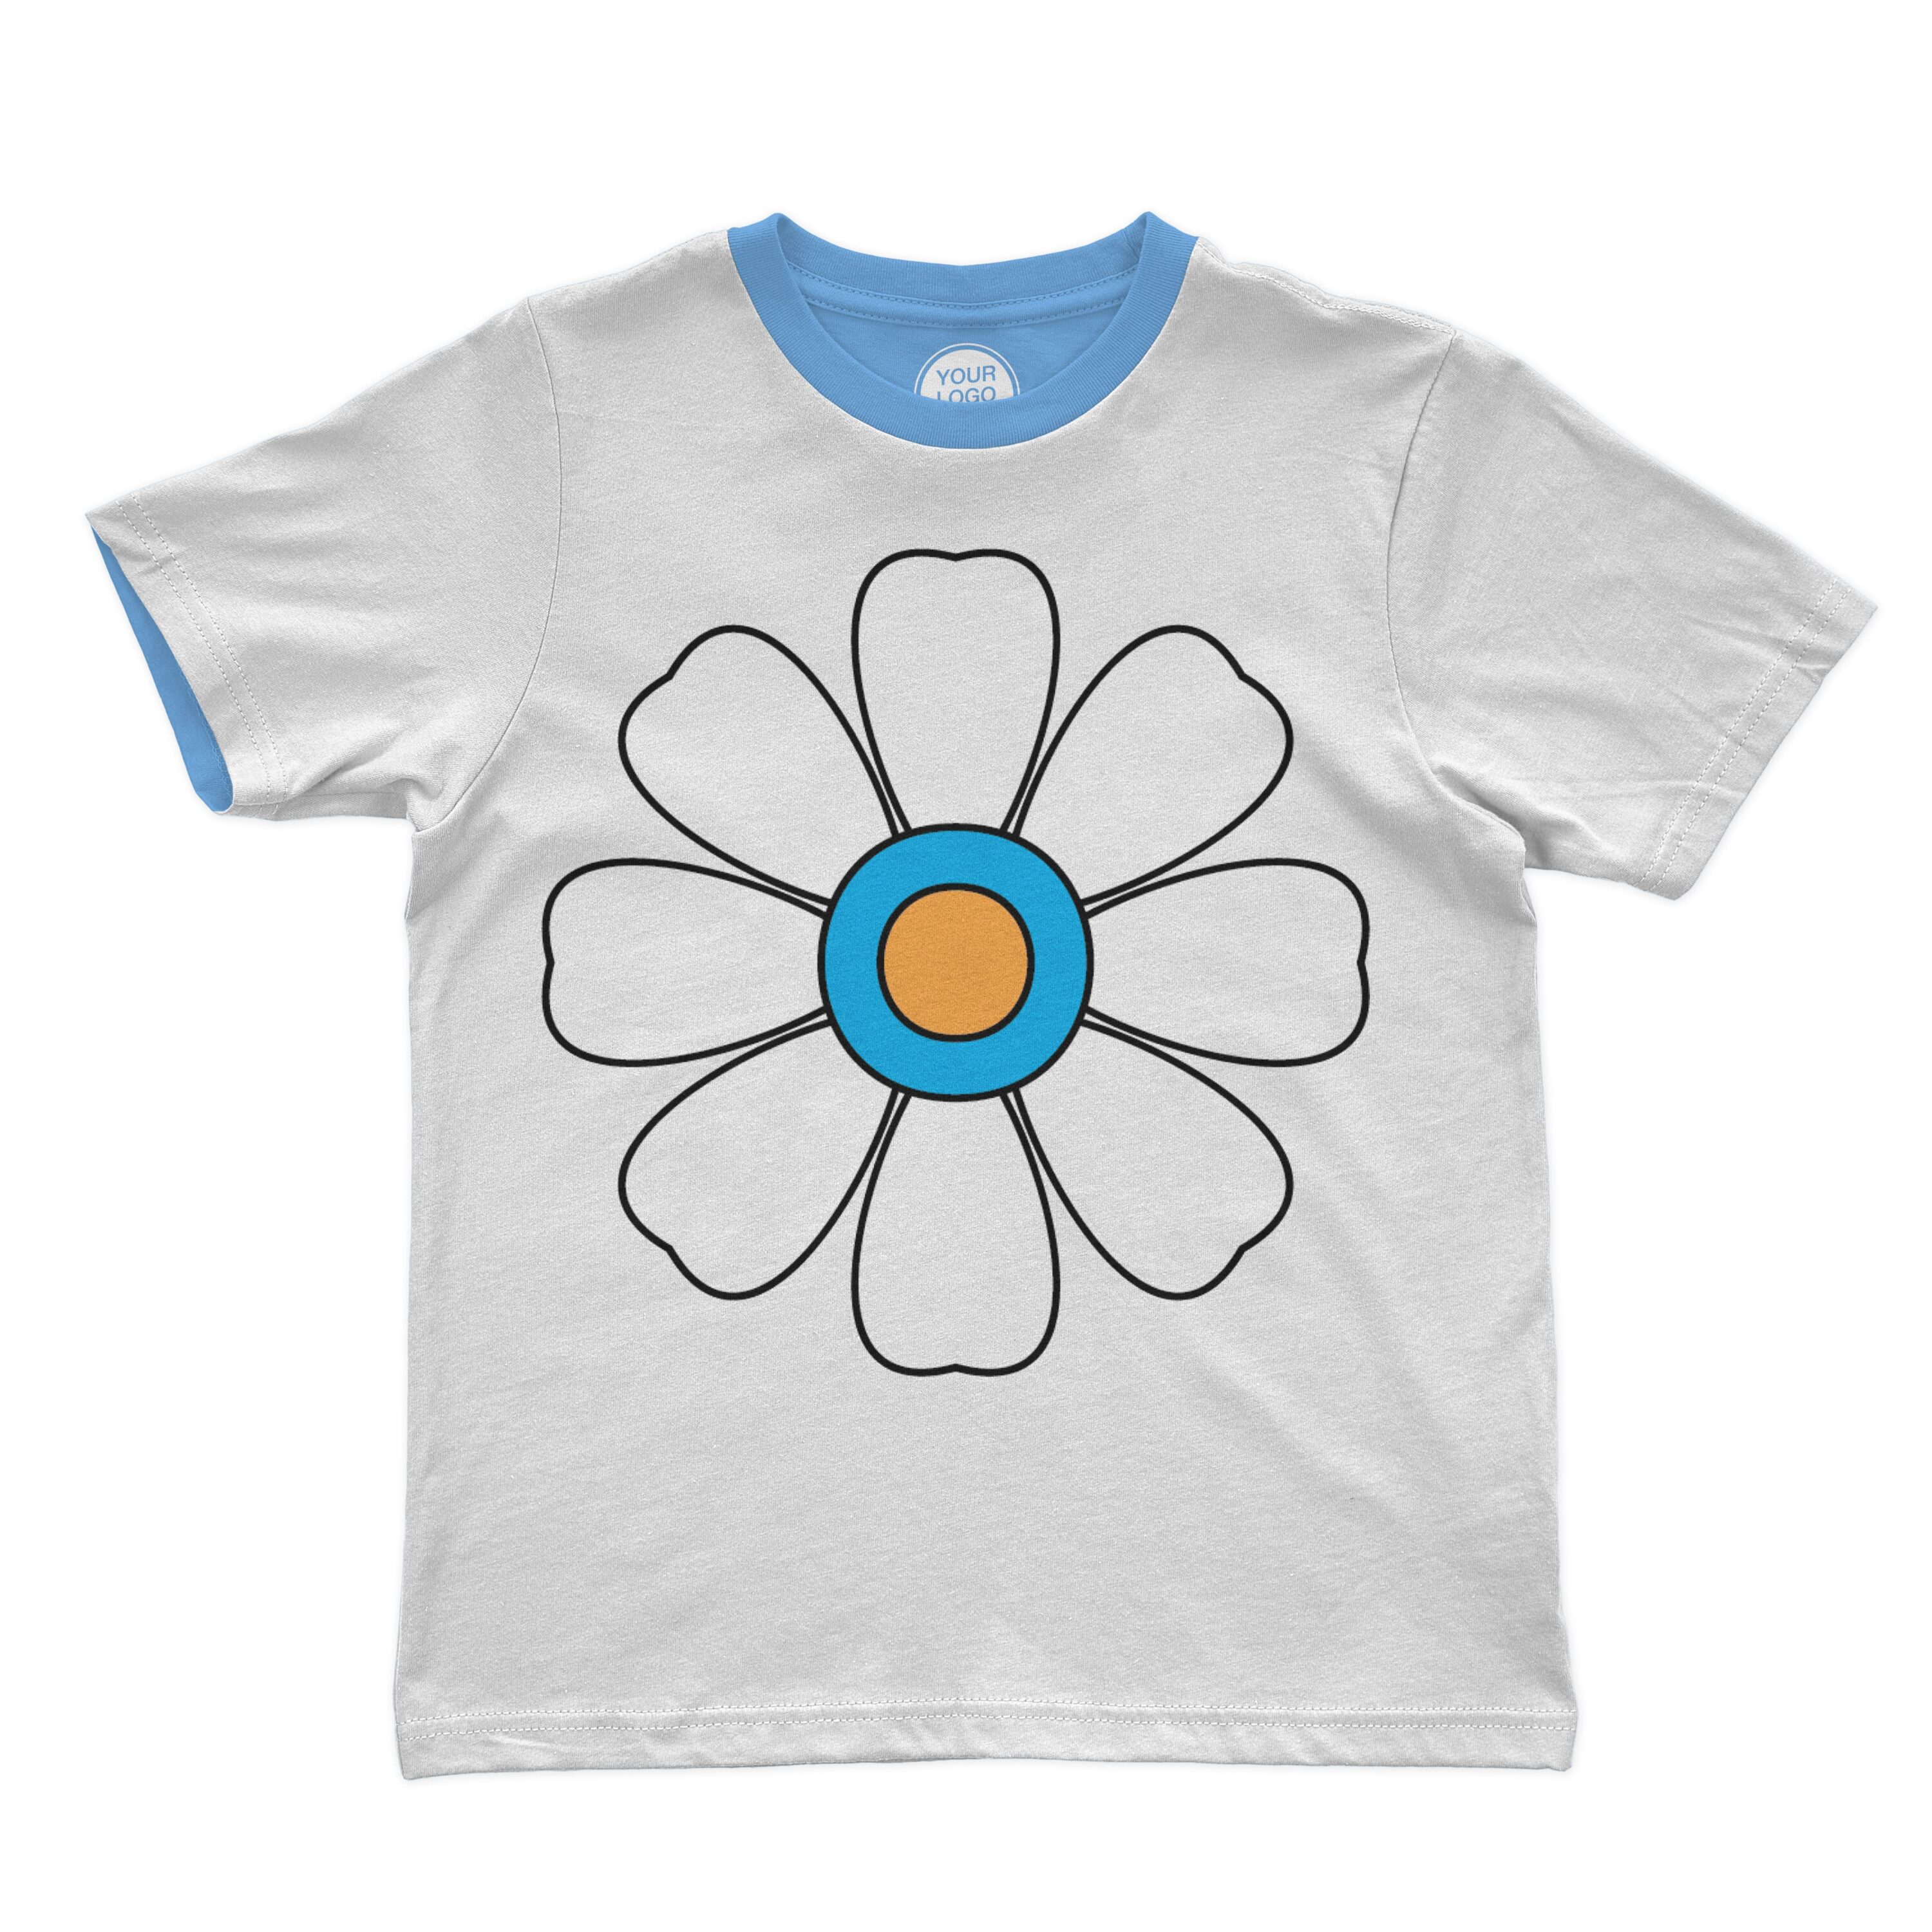 Cute hippie daisy flower on the t-shirt.